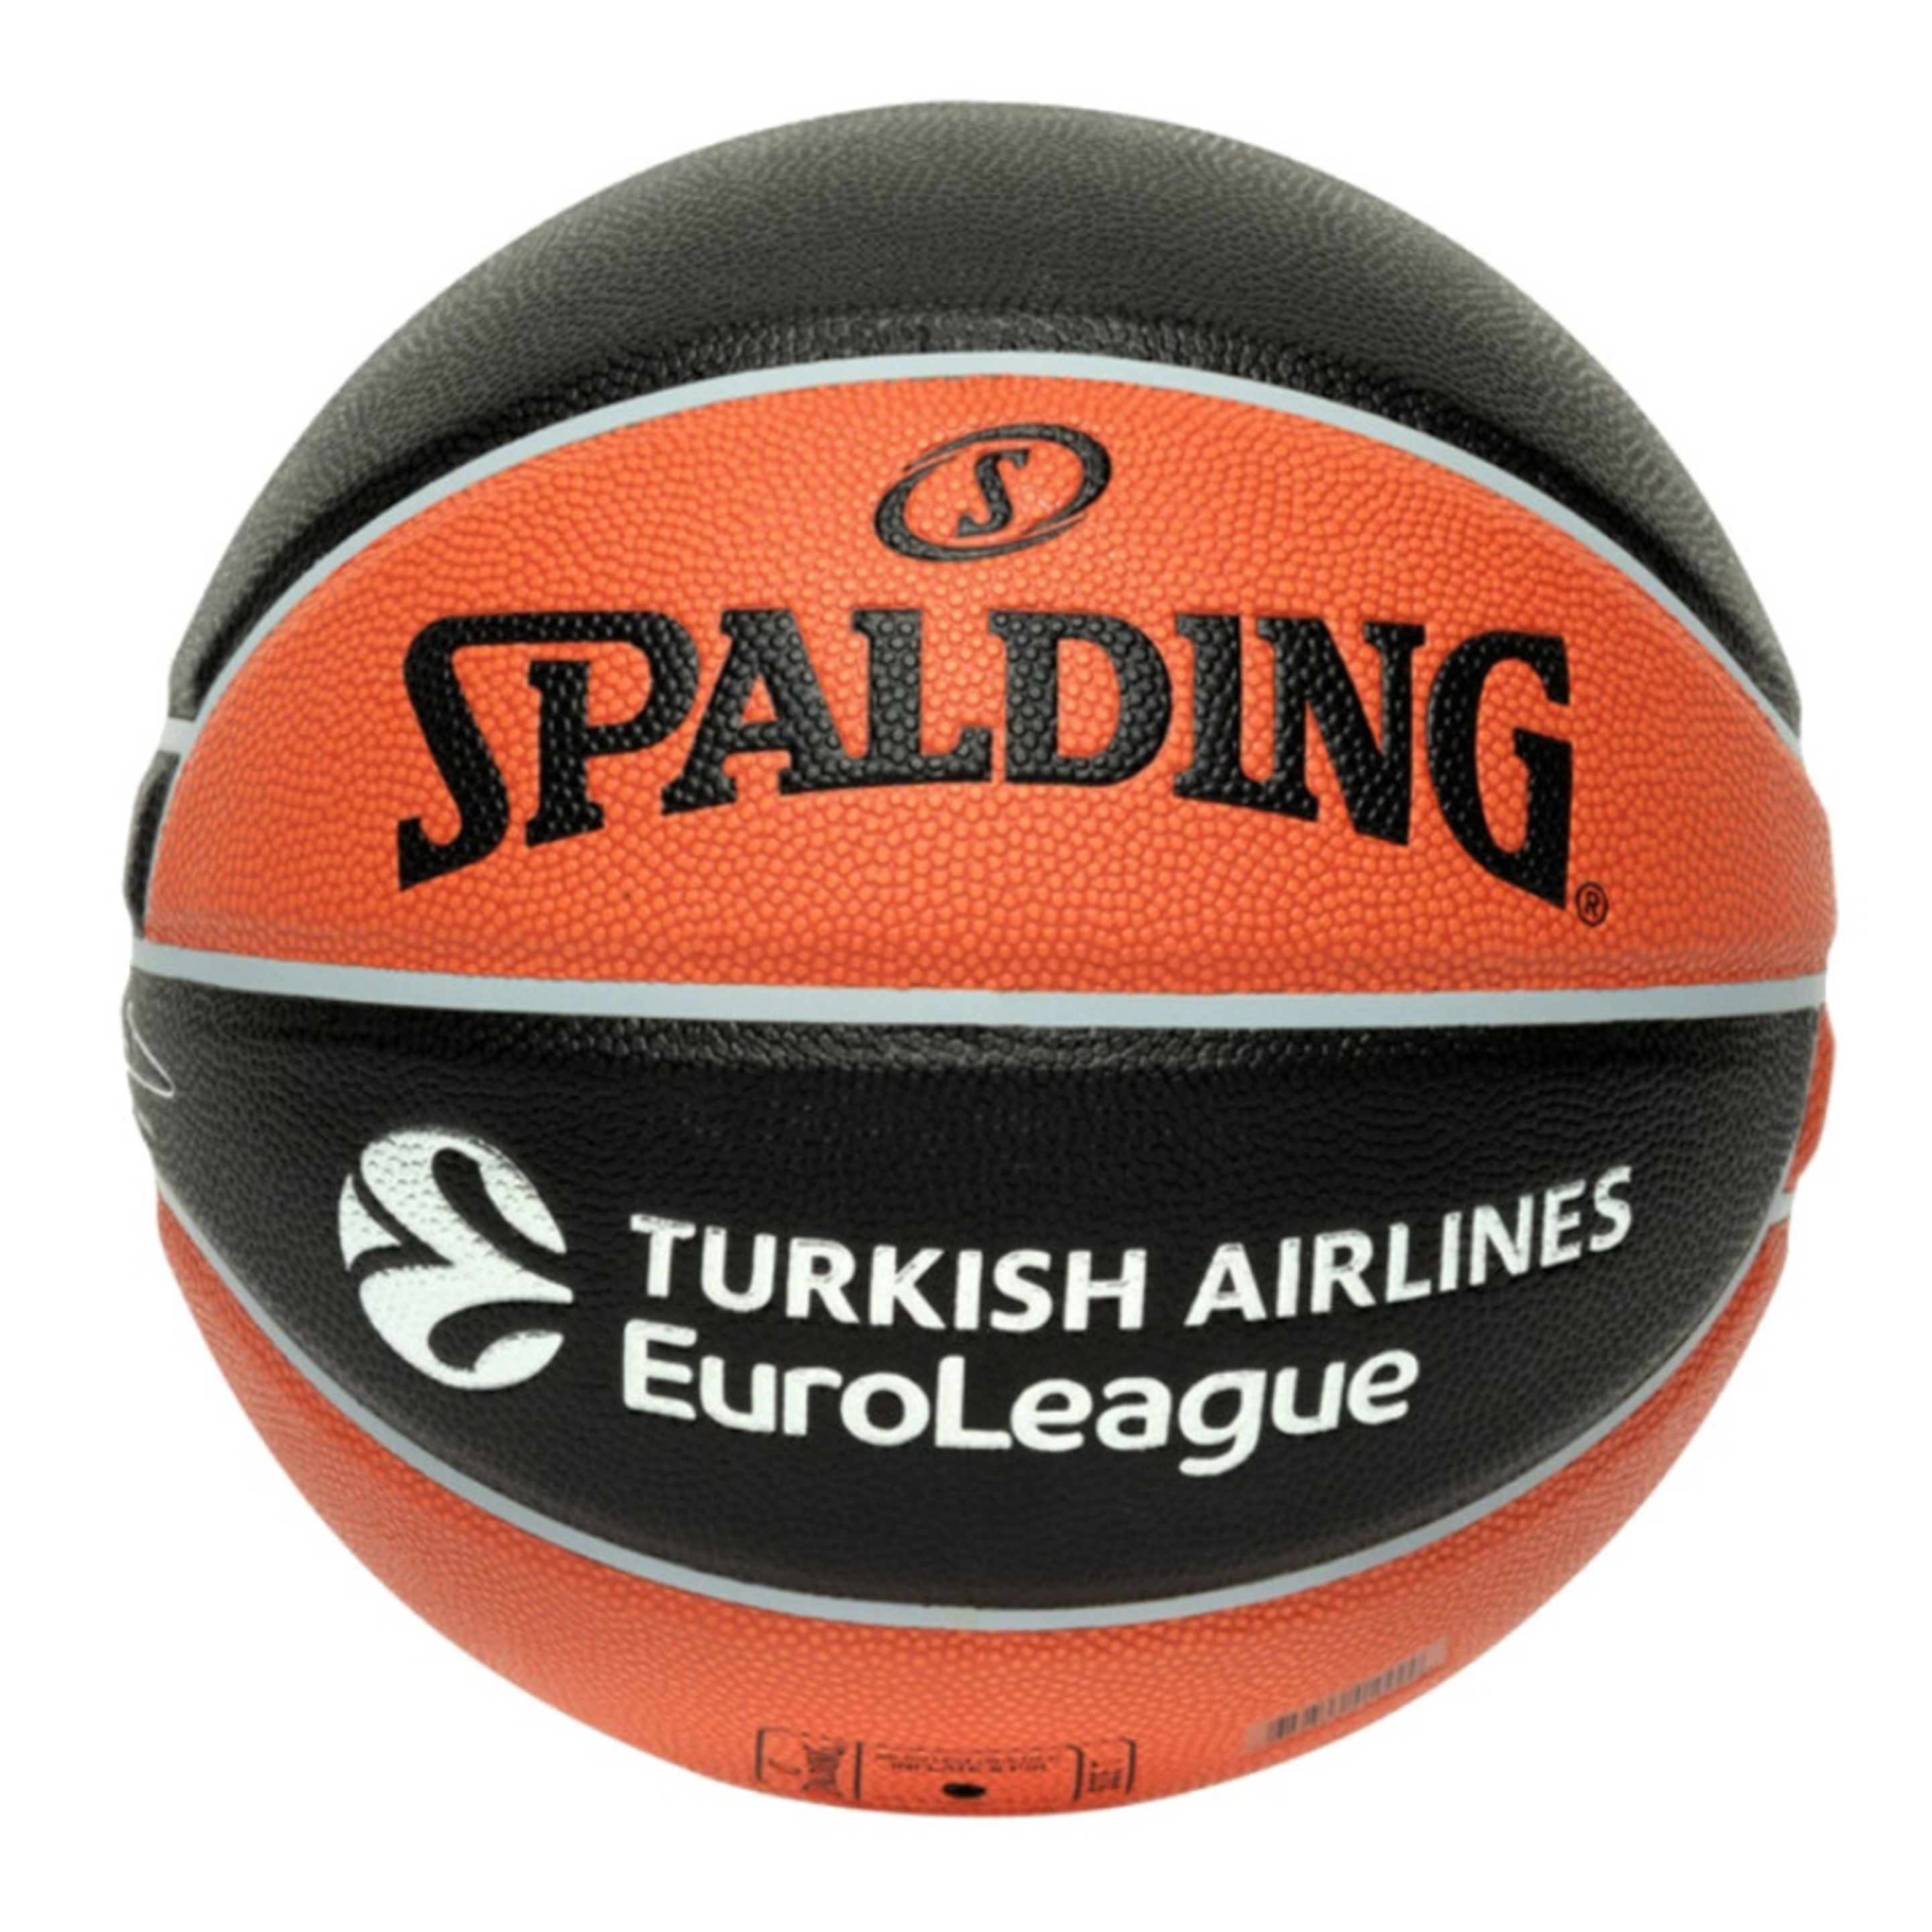 Balón De Baloncesto Spalding Excel Tf-500 Euroleague Talla 7 - negro-naranja - 